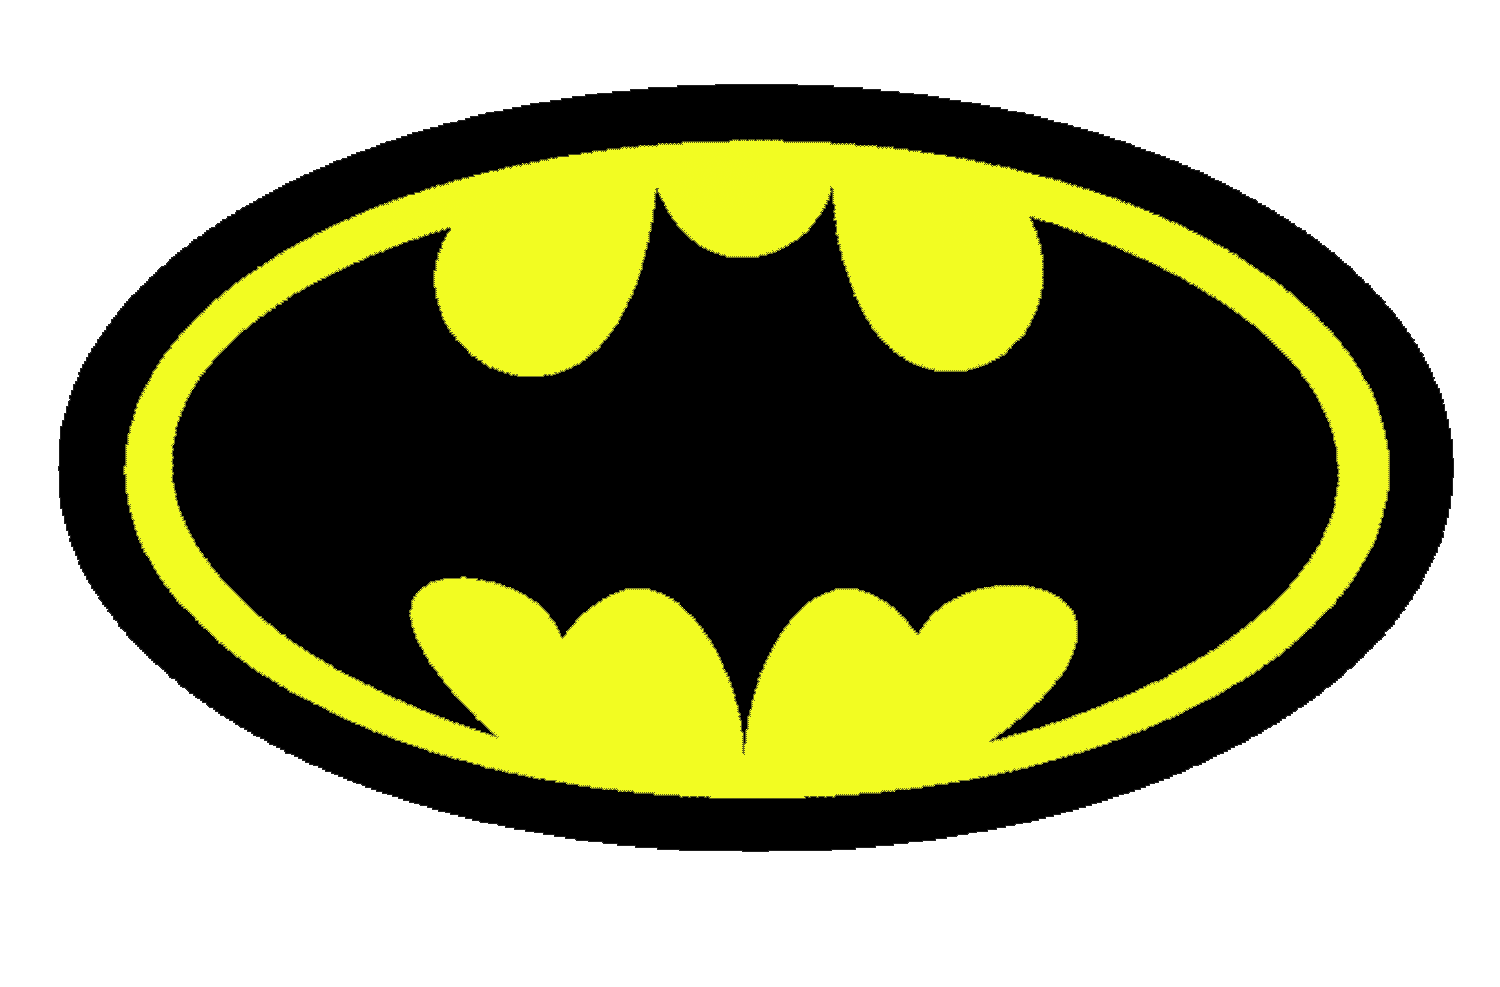 Batman Clip Art - Get Your Hands on High-Quality Batman Images